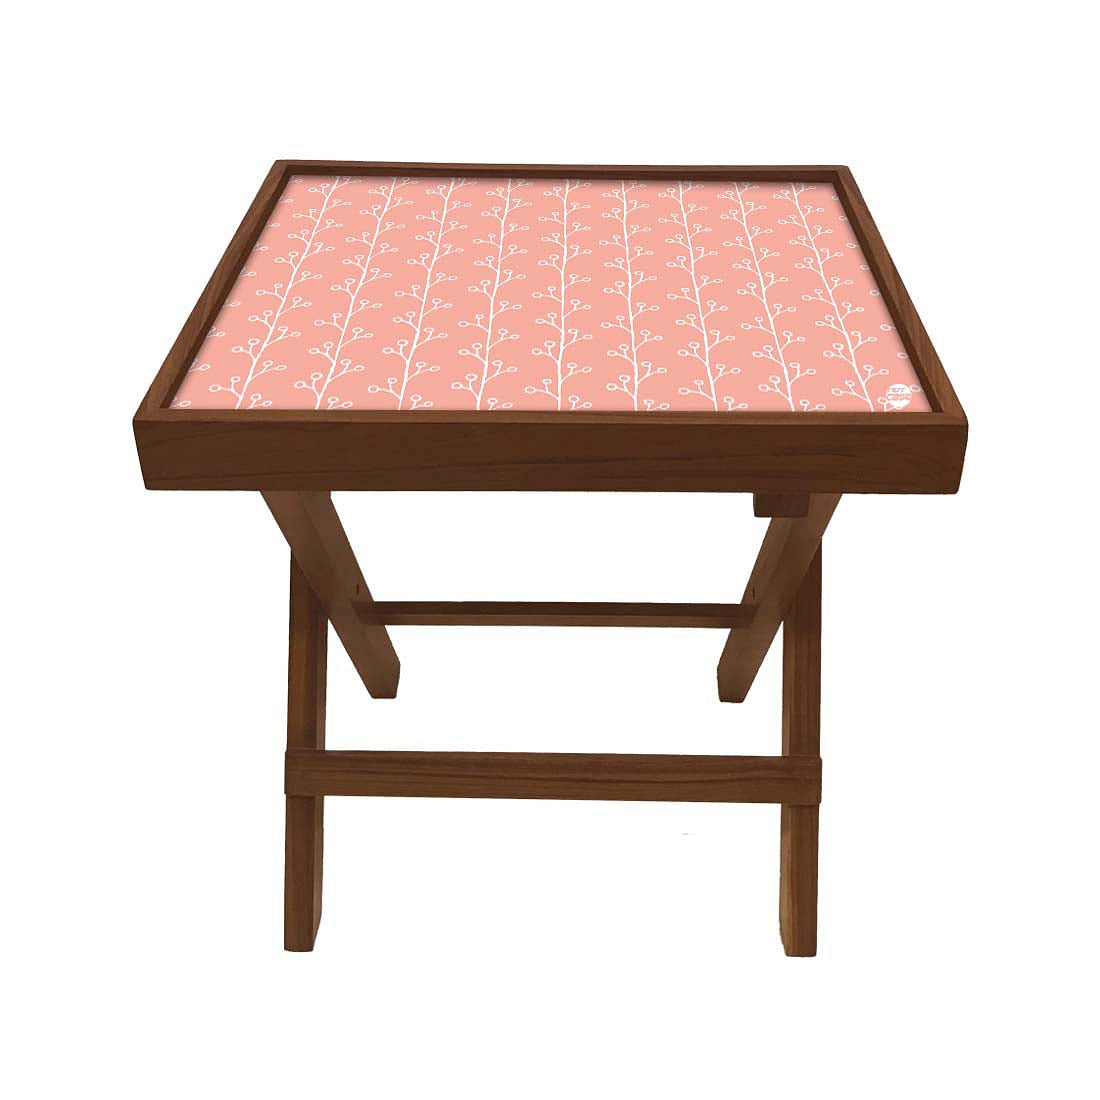 Folding Side Table - Teak Wood -Peach Patten Nutcase